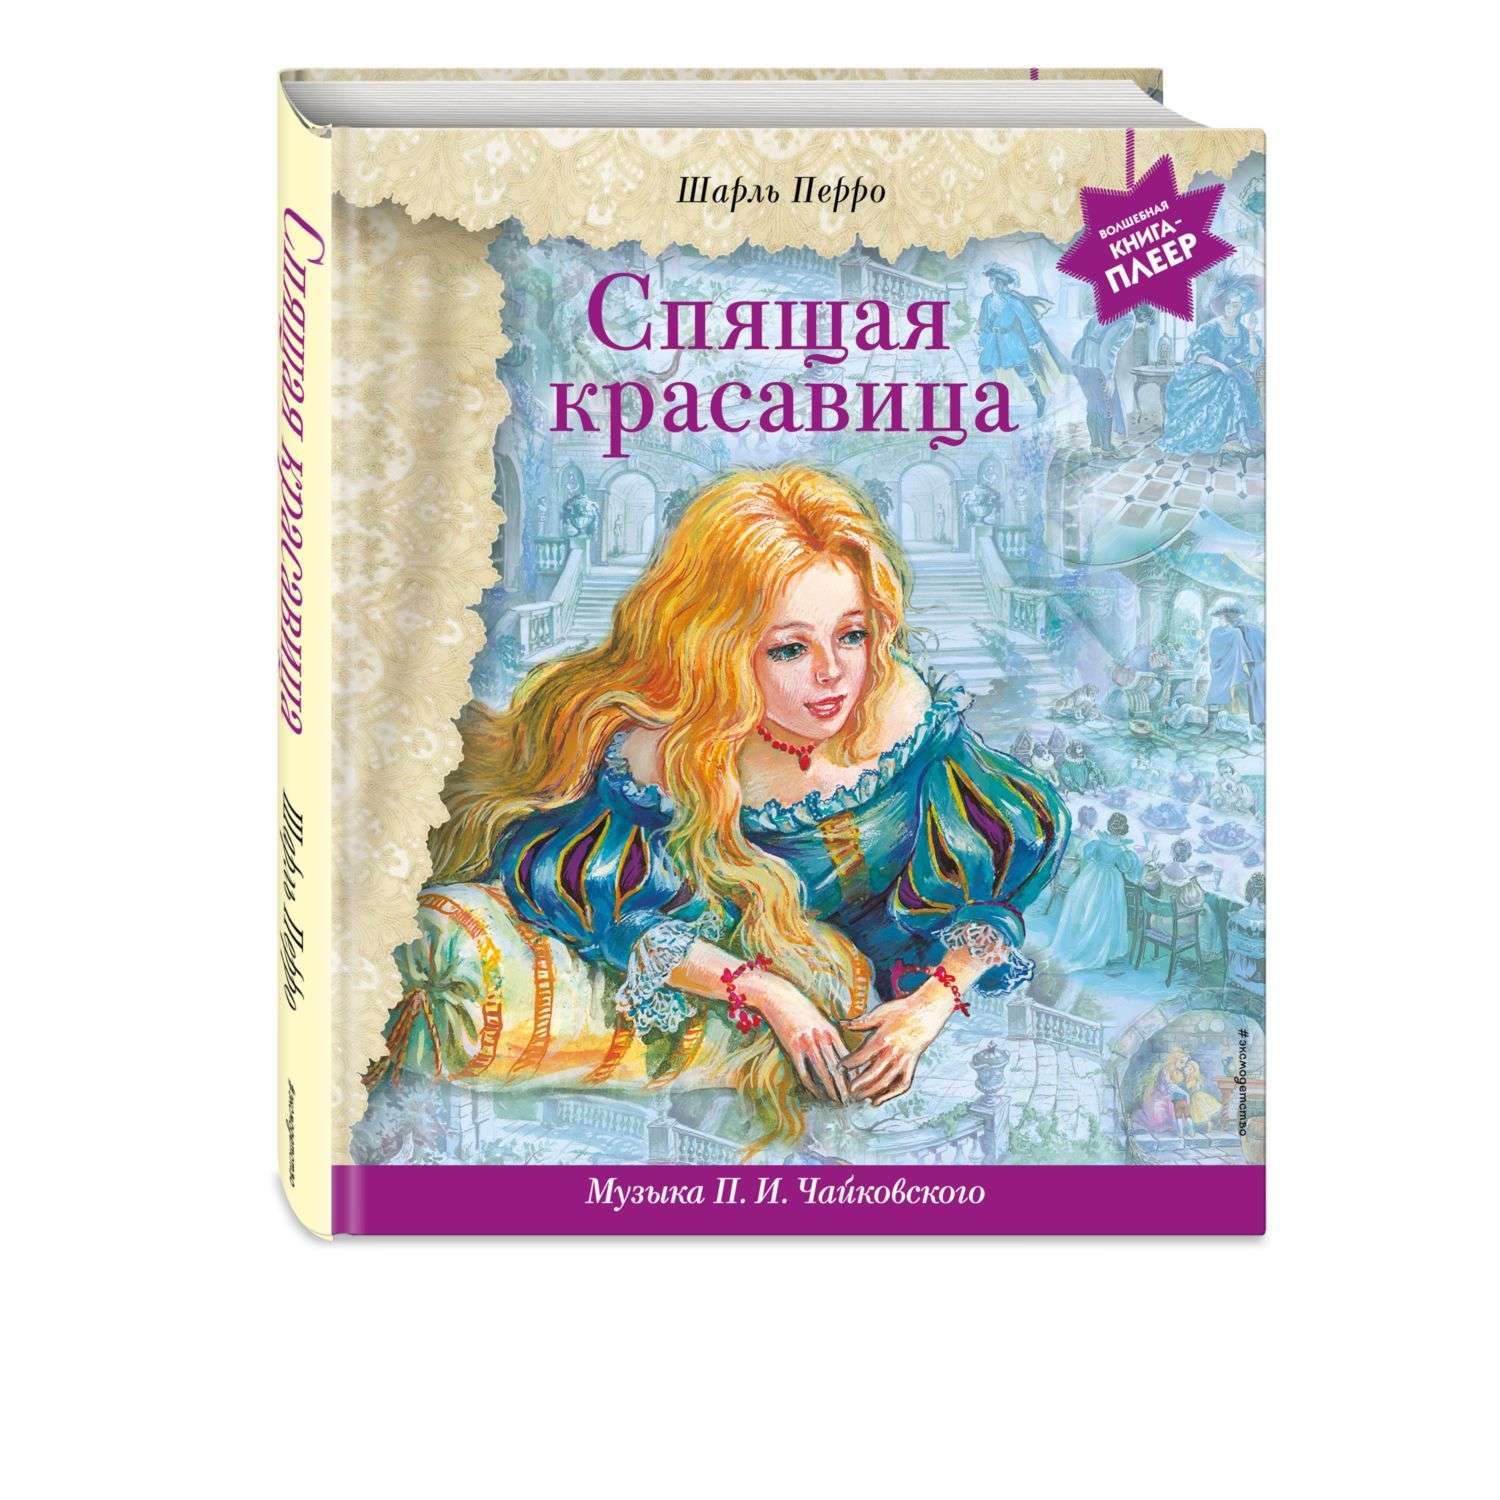 Книга Эксмо Спящая красавица музыка Чайковского - фото 1